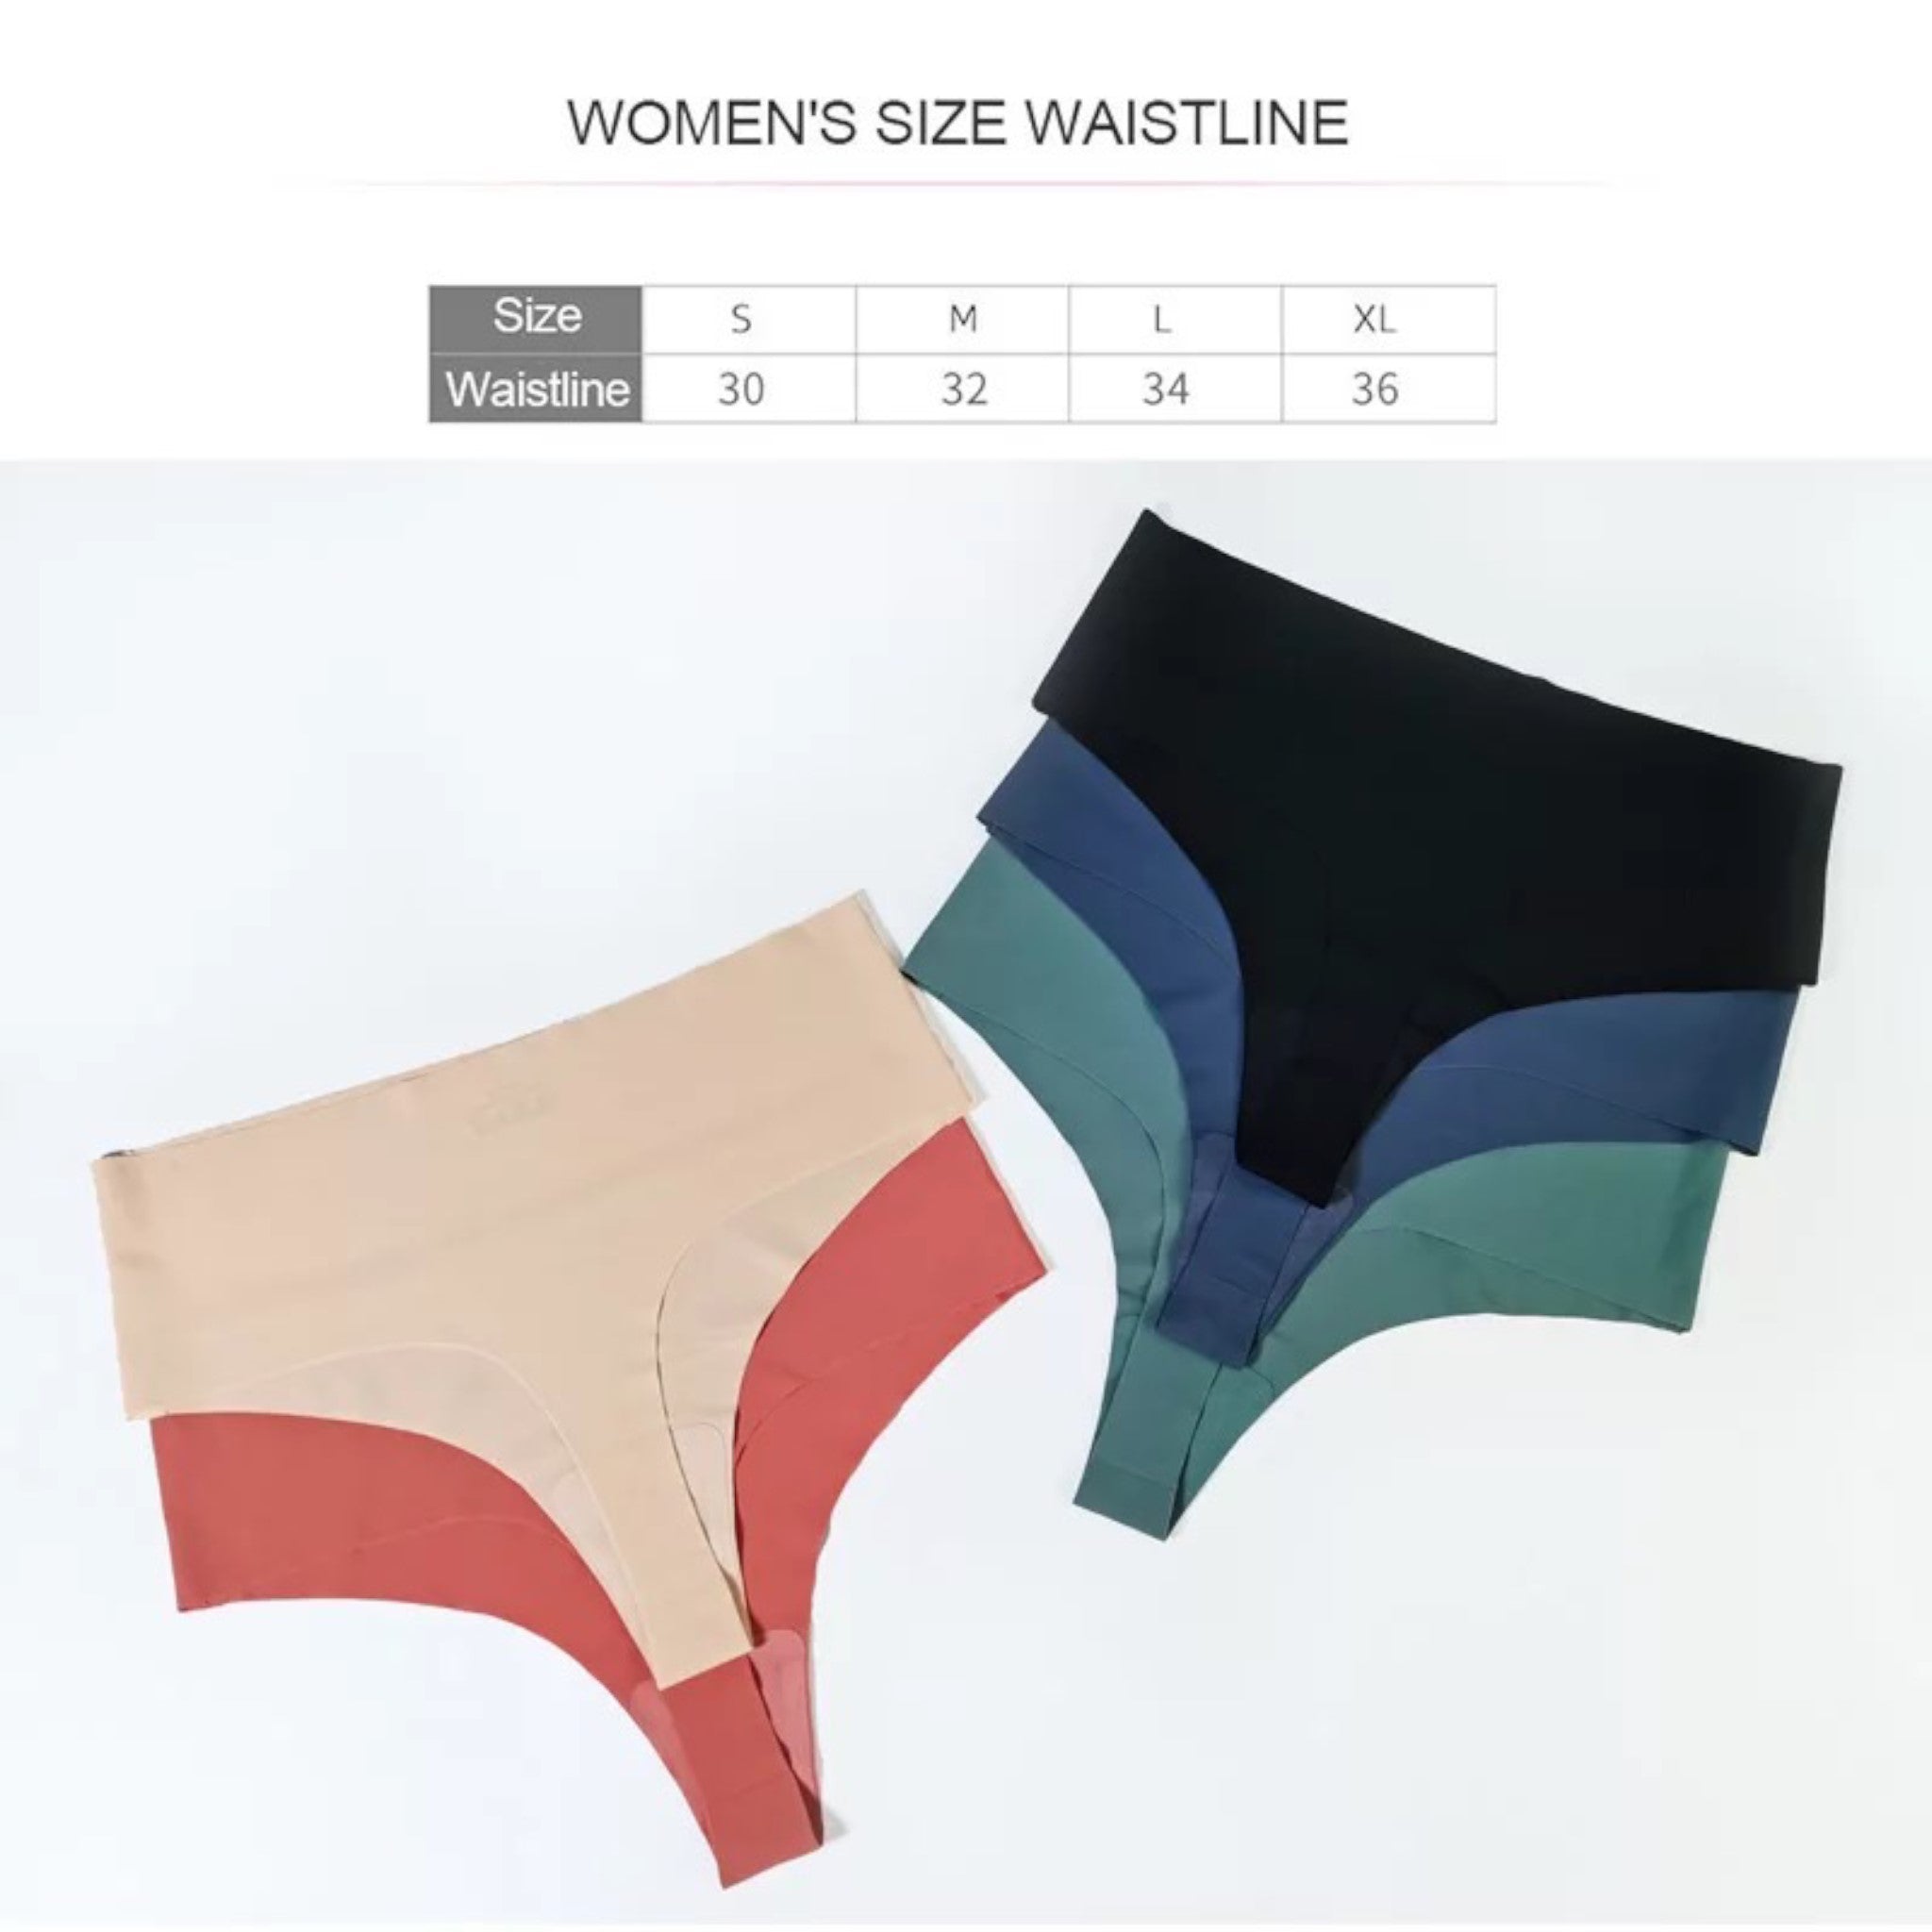 Ice Silk Seamless Thong Panties for Women – SHEEK BODY, LLC